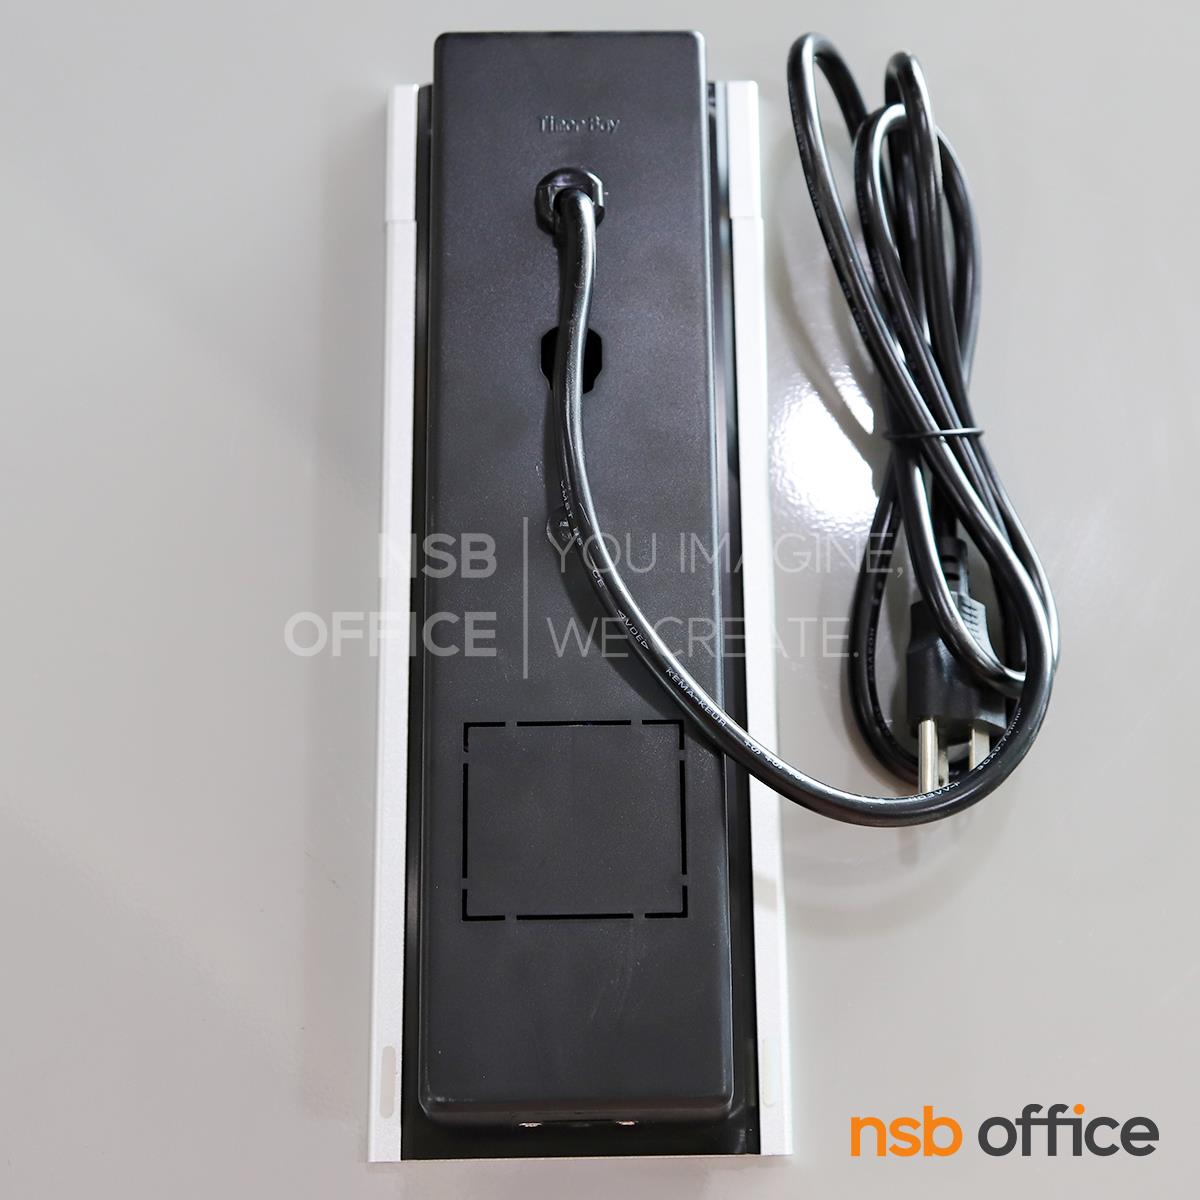 ป็อปอัพฝาสไลด์ 3 Power 2 USB (A+C) รุ่น Contoria (คอนโทเรีย)  มีสายปลั๊กไฟ